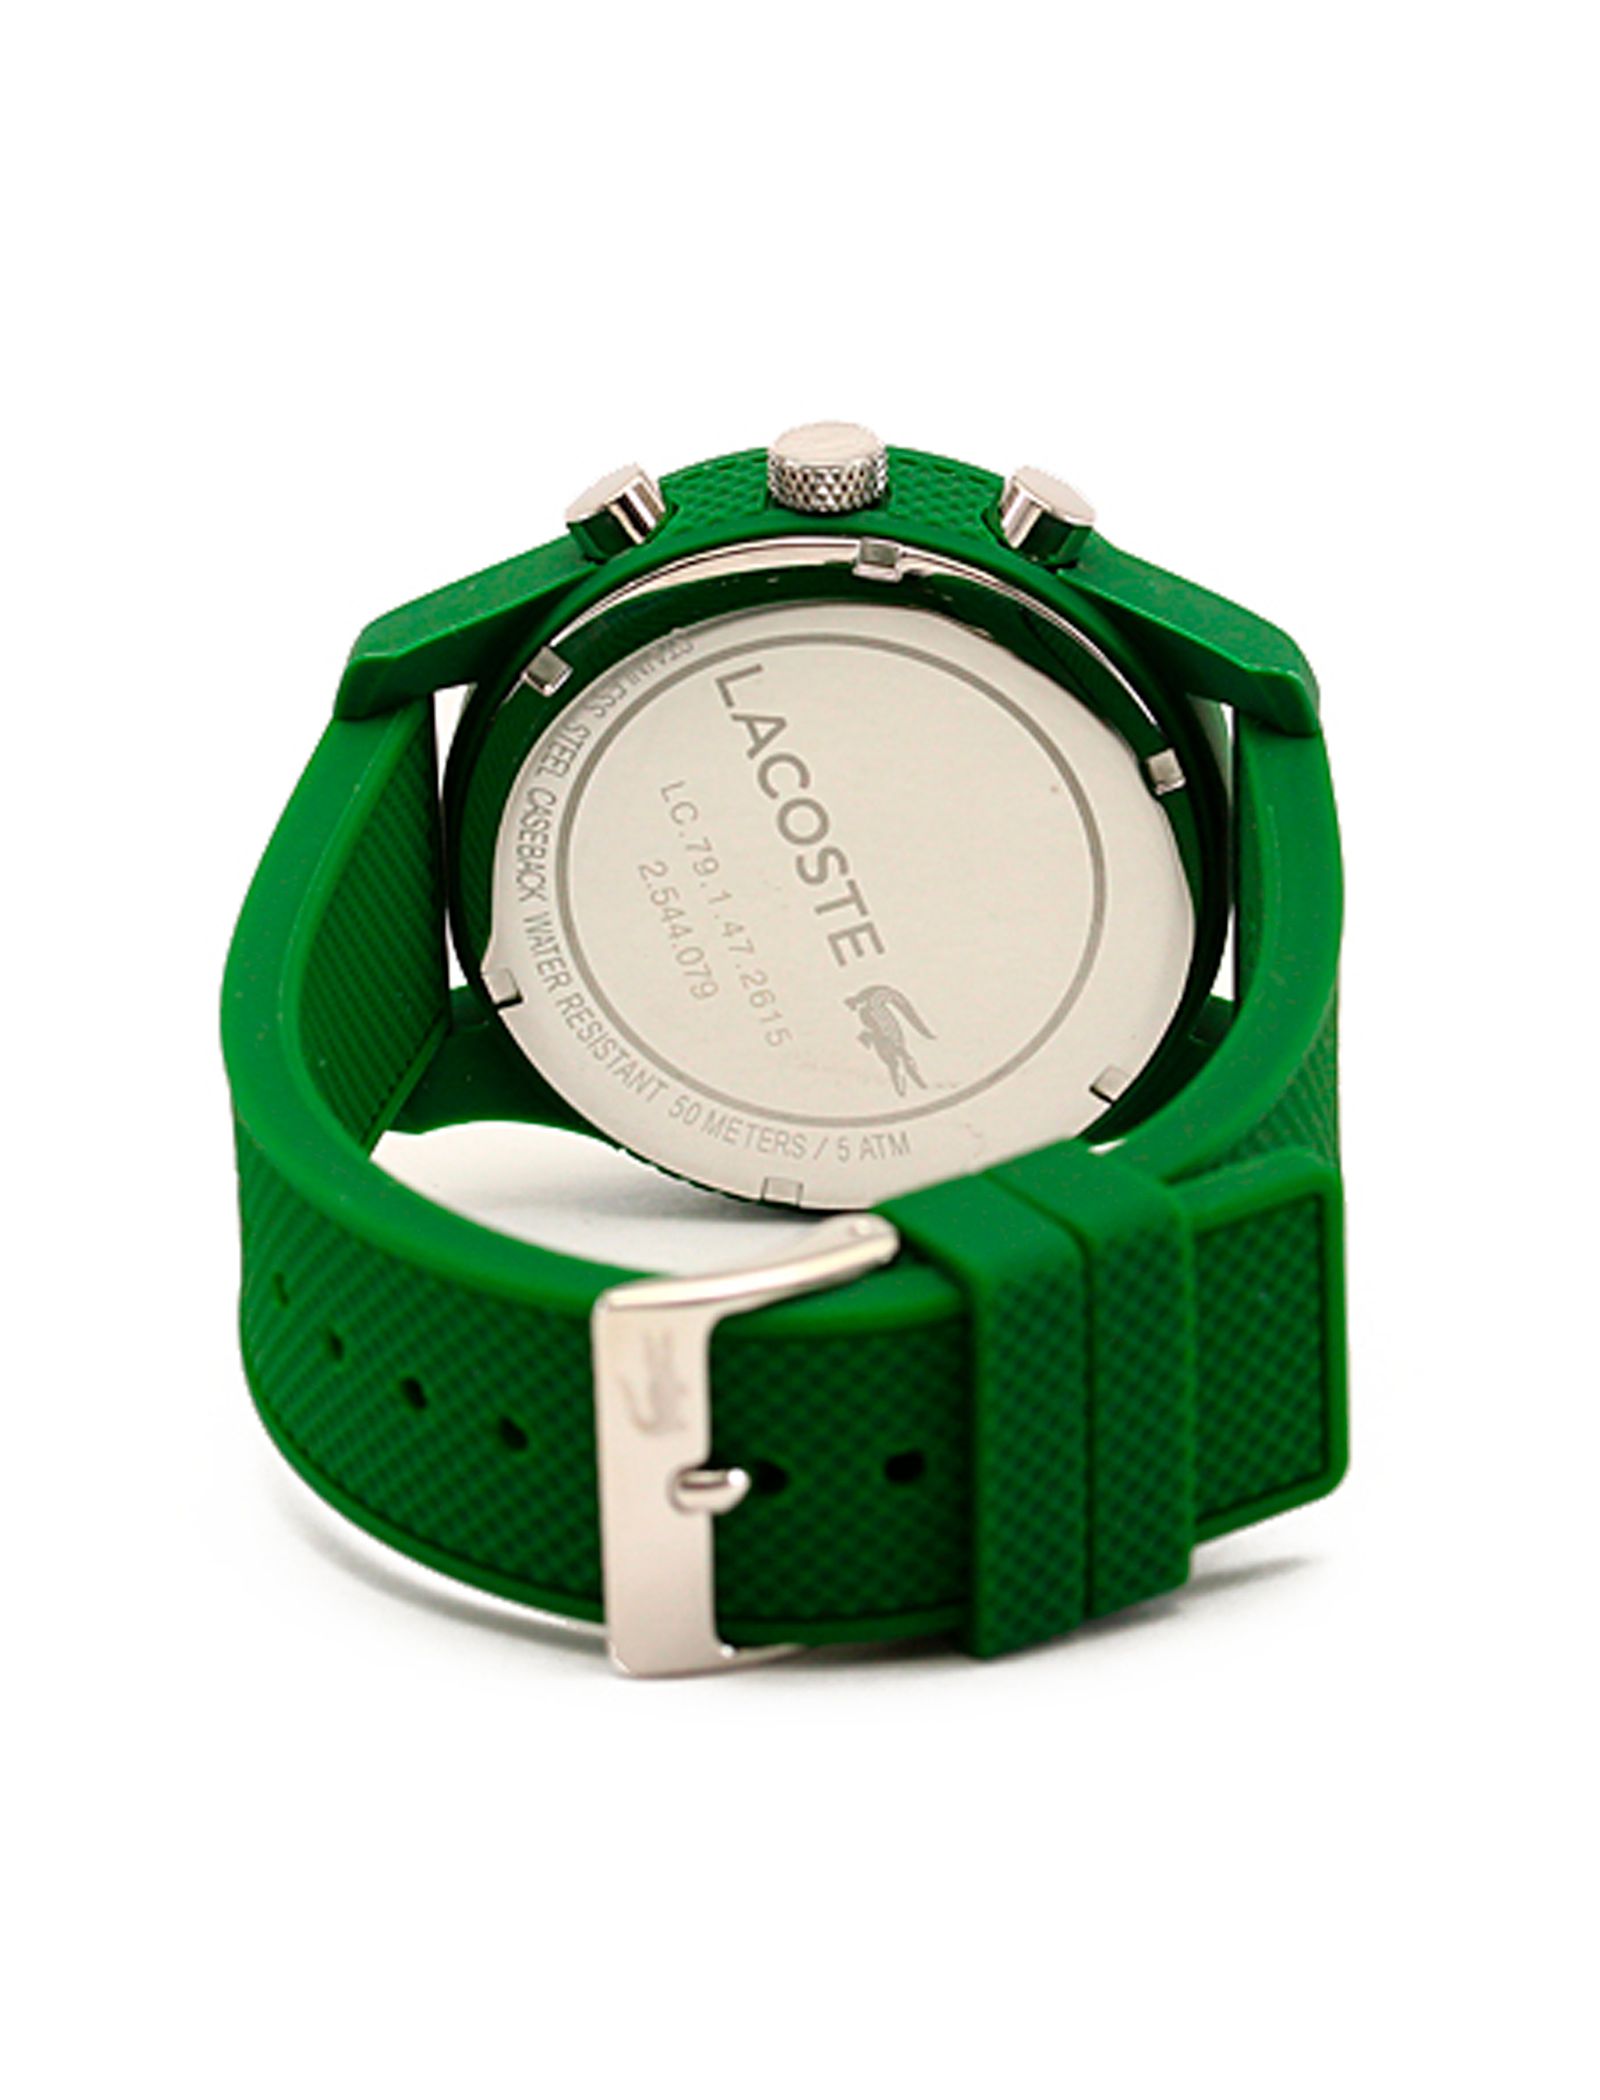 ساعت مچی عقربه ای مردانه لاگوست مدل 2010822 - سبز - 4